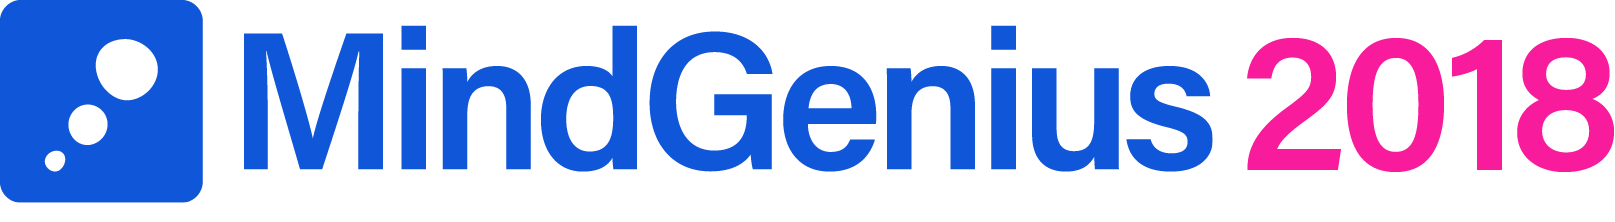 MindGenius 2018 logo